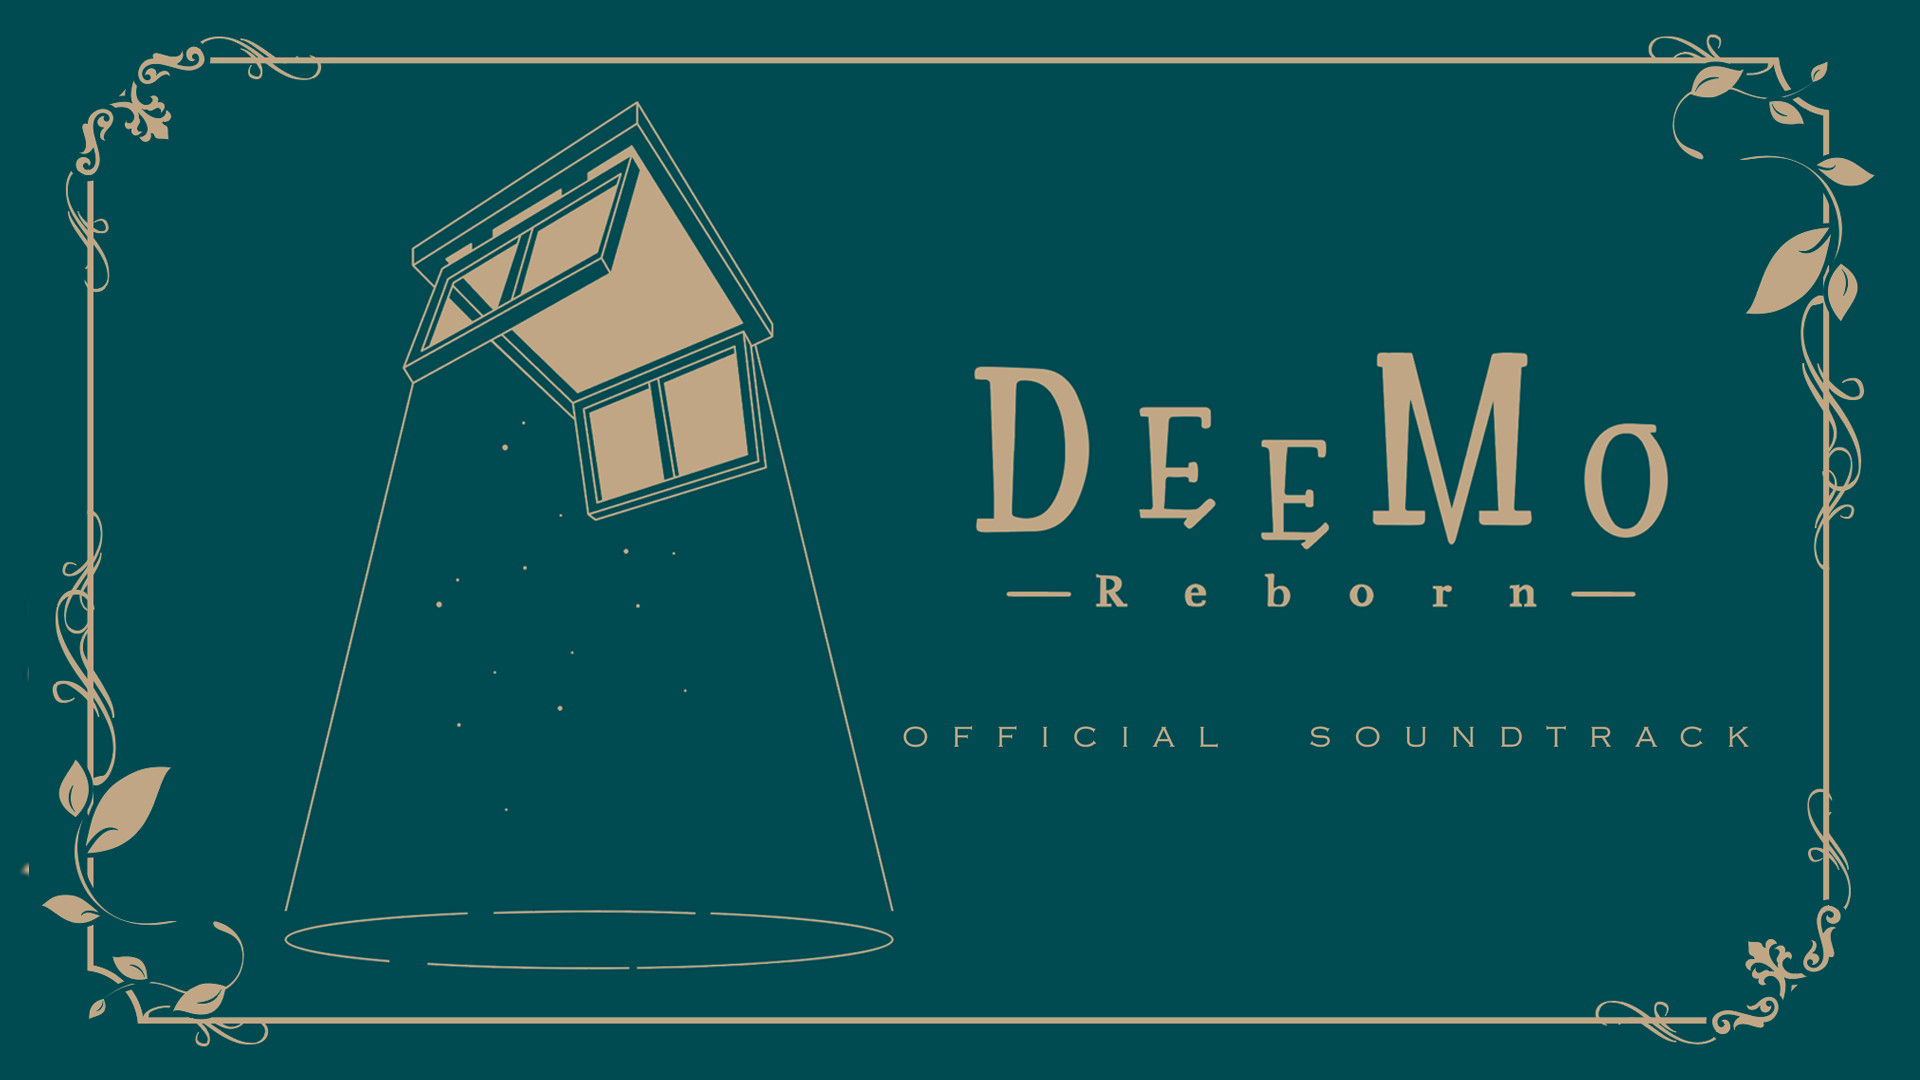 Deemo Reborn Ost Vol 1 On Steam